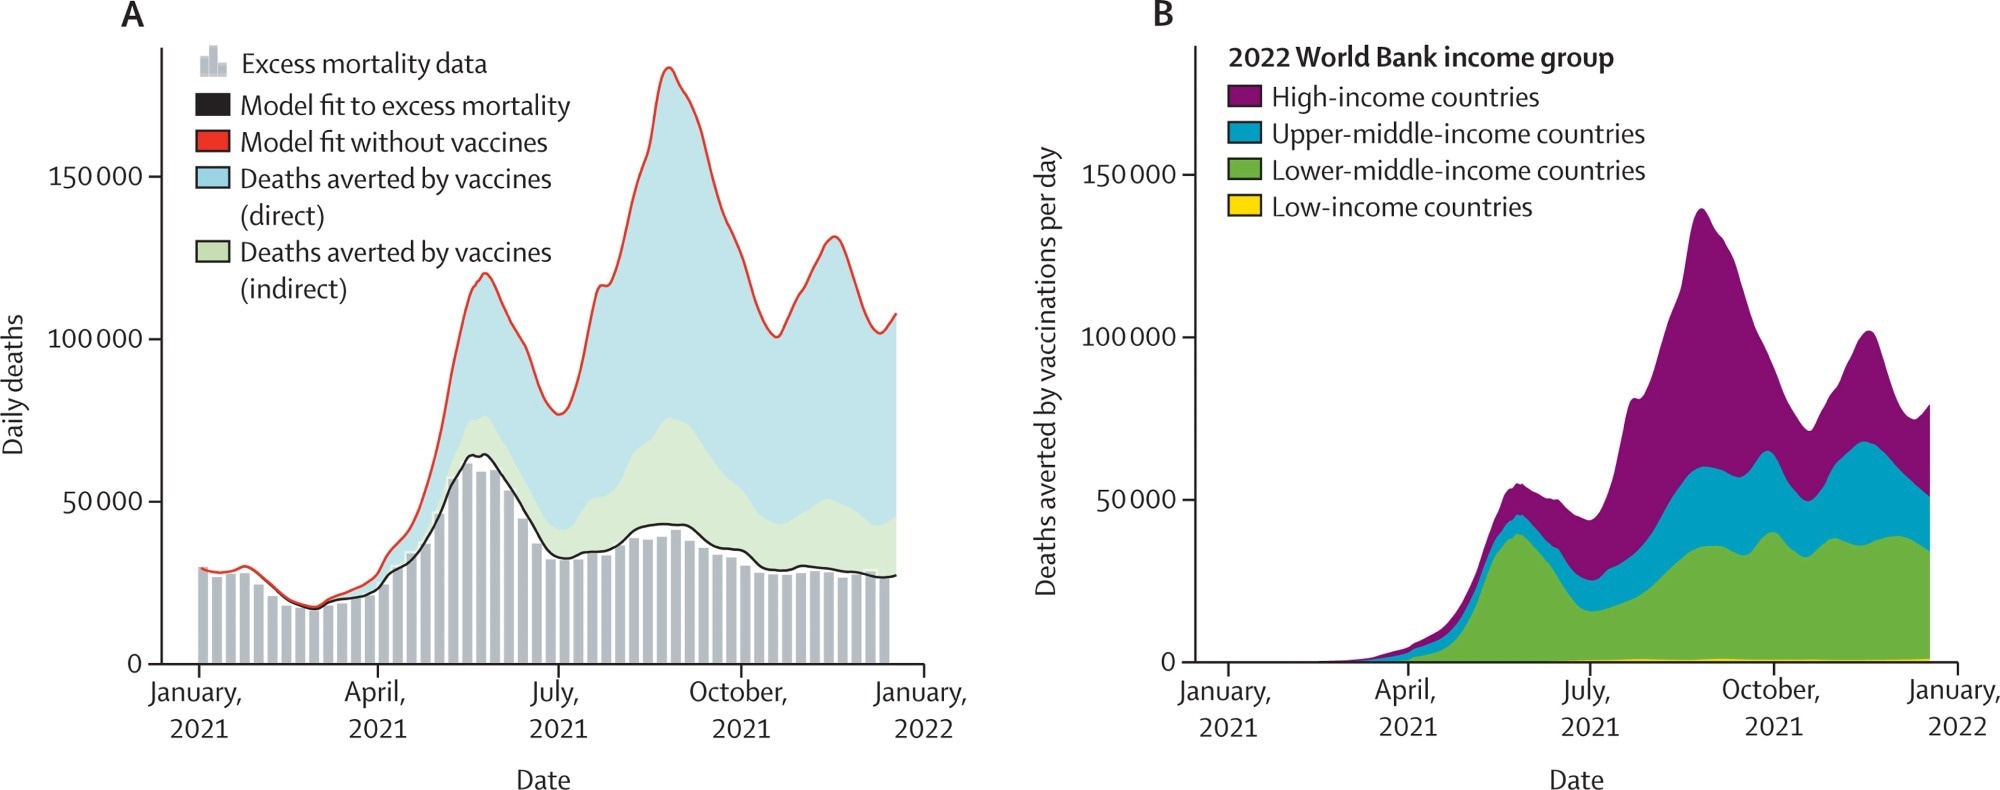 Wereldwijde COVID-19-sterfgevallen als gevolg van vaccinatie voorkomen op basis van overtollige sterfgevallen (a) Het gemiddelde aantal dagelijkse COVID-19-sterfgevallen op basis van schattingen van overtollige sterfgevallen (grijze verticale balken) in het eerste jaar van vaccinatie.  De basisschatting van dagelijkse COVID-19-sterfgevallen uit het geschikte model voor extra sterfgevallen wordt uitgezet door de ononderbroken zwarte lijn en het scenario zonder vaccin-teller wordt uitgezet met een rode lijn.  Het gat tussen de rode en zwarte lijn geeft het aantal sterfgevallen aan dat is voorkomen door vaccinatie, waarbij het aandeel van het totale aantal sterfgevallen dat is voorkomen door directe bescherming door vaccinatie in blauw wordt weergegeven en indirecte bescherming in groen.  (b) Het gemiddelde aantal dagelijkse sterfgevallen dat per dag is vermeden volgens de inkomensgroep van de Wereldbank voor 2022.